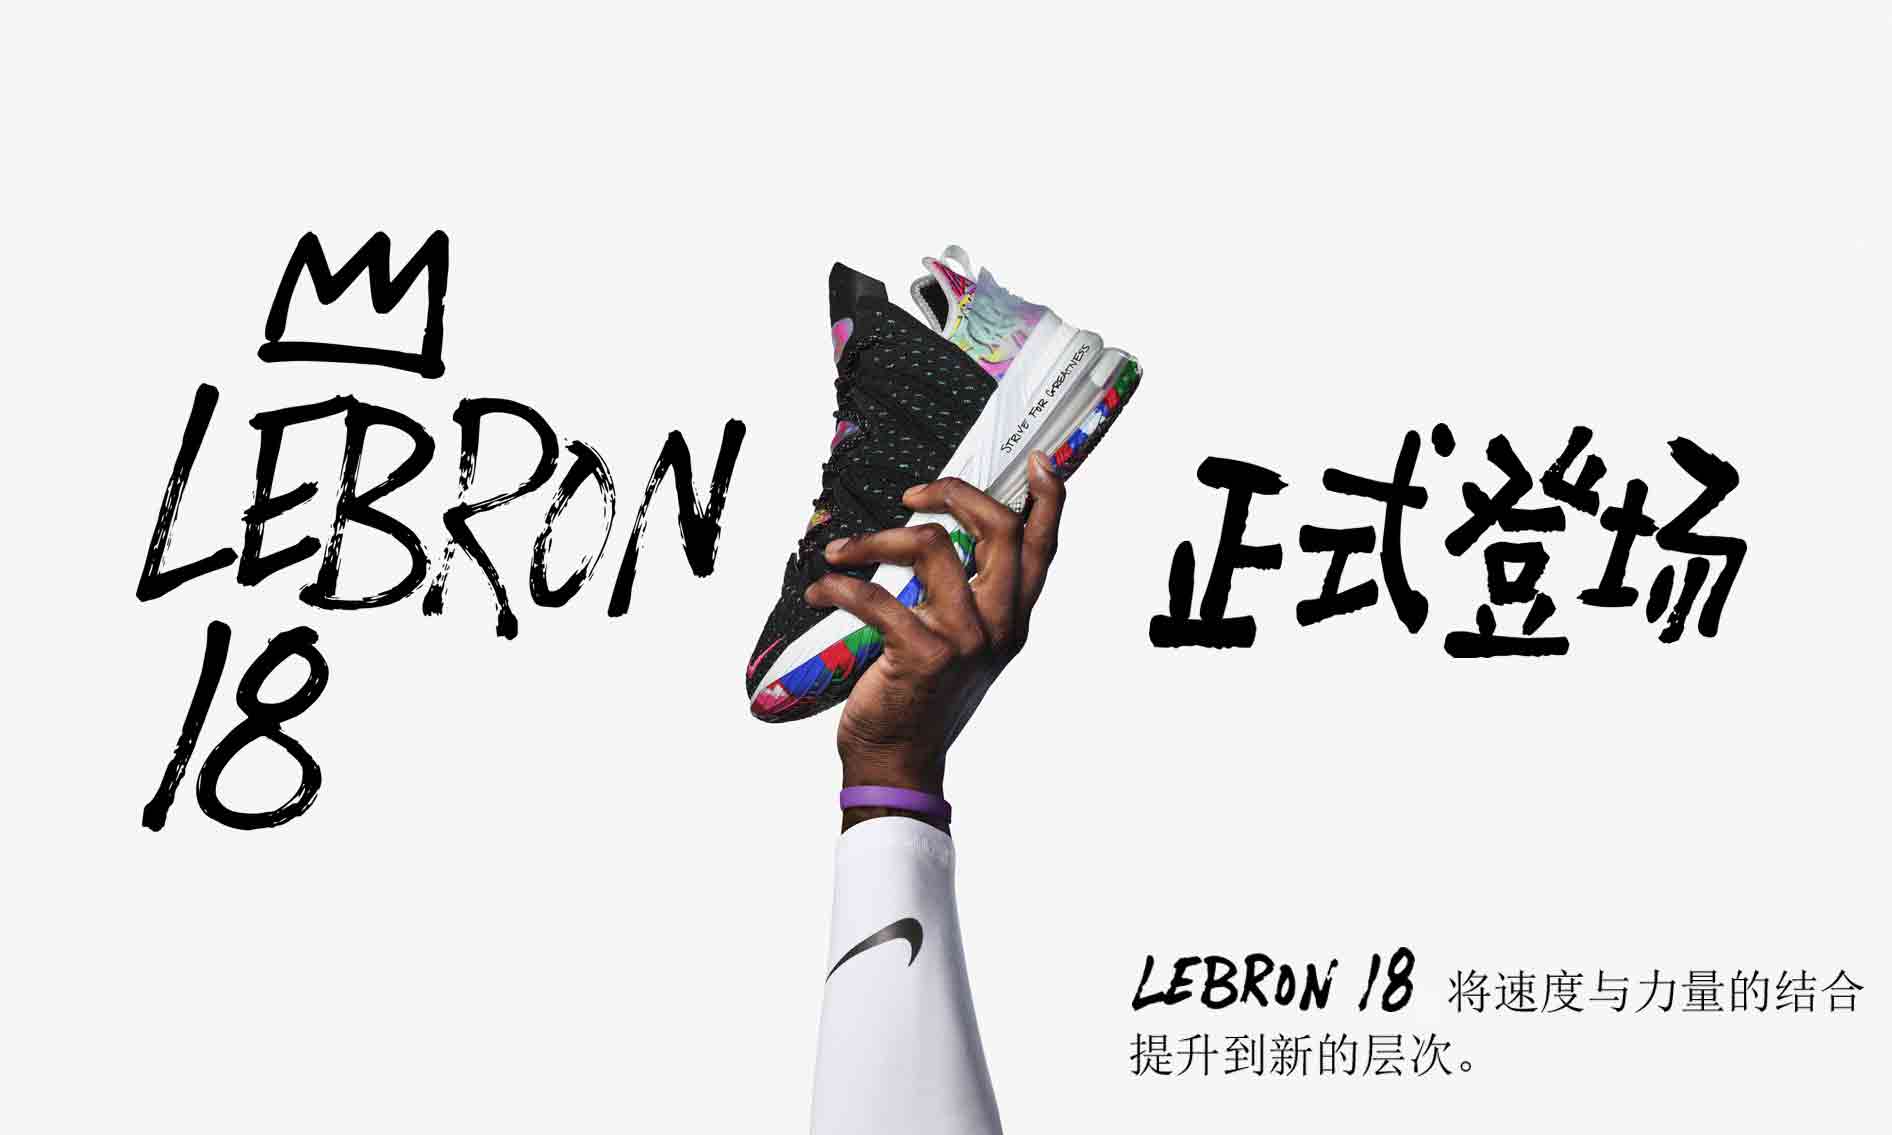 Nike LEBRON 18 正式登场